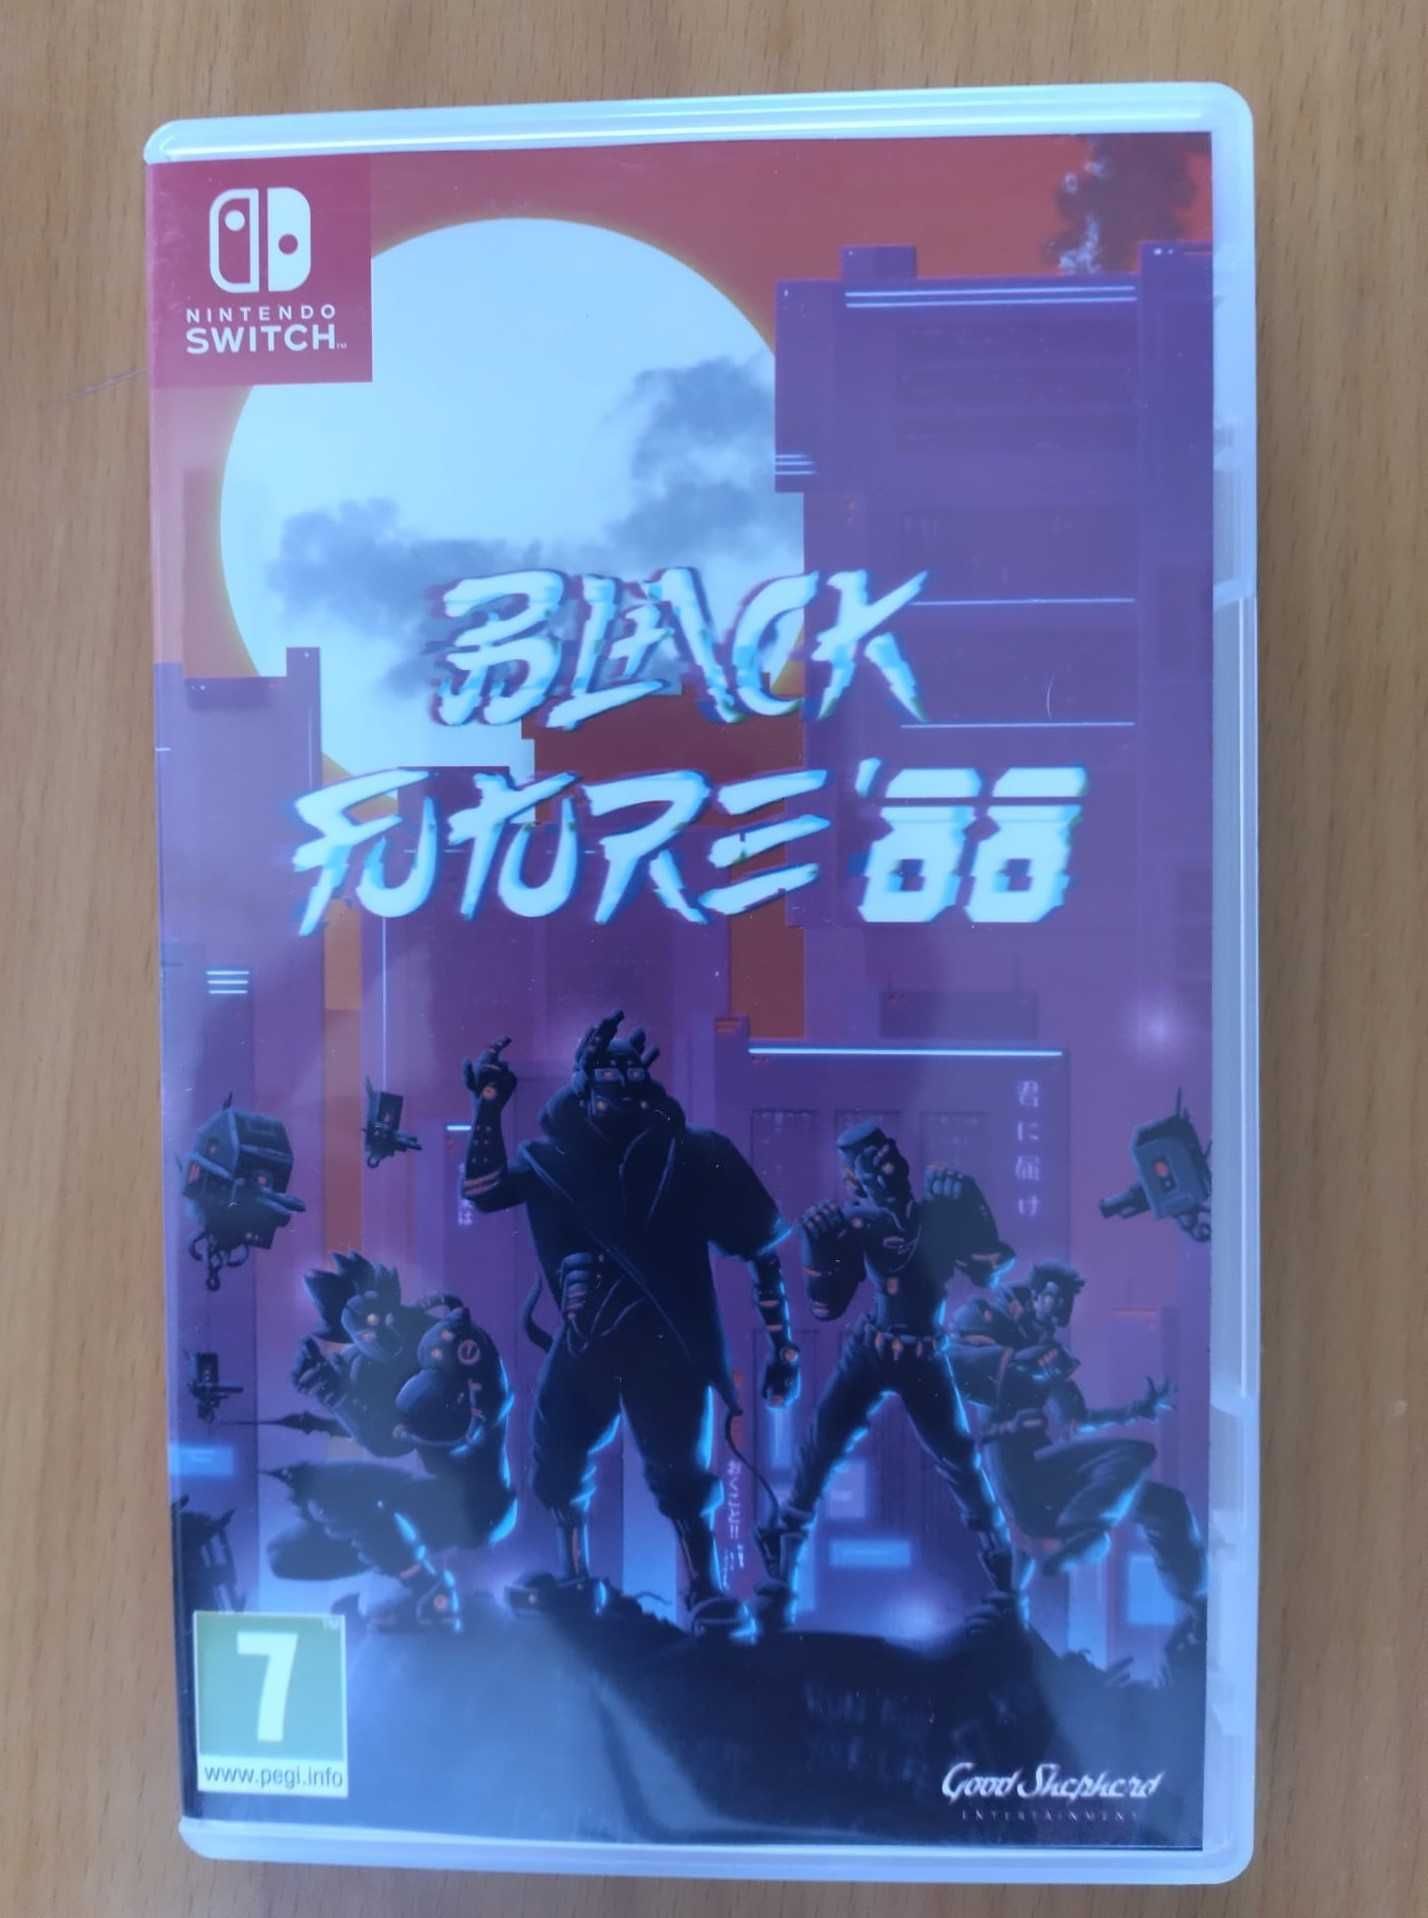 Nintendo Switch jogo "Black Future 88" (como novo)